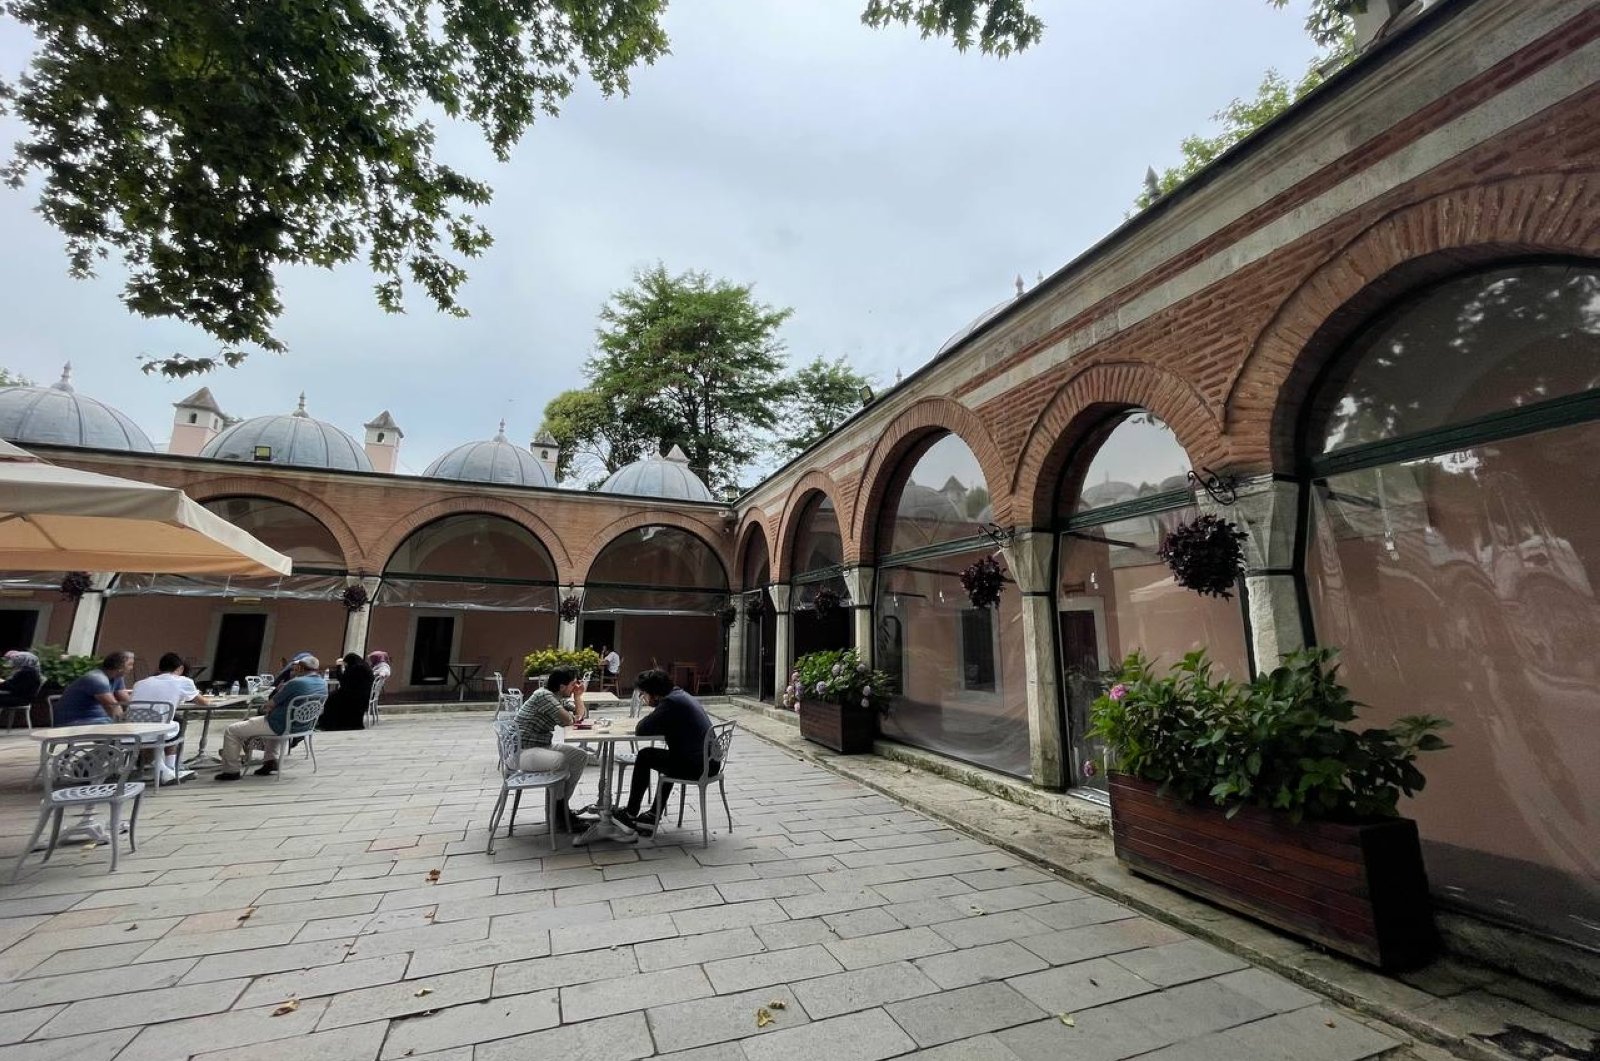 Kompleks yang dibangun oleh arsitek Ottoman Sinan berubah menjadi pusat seni